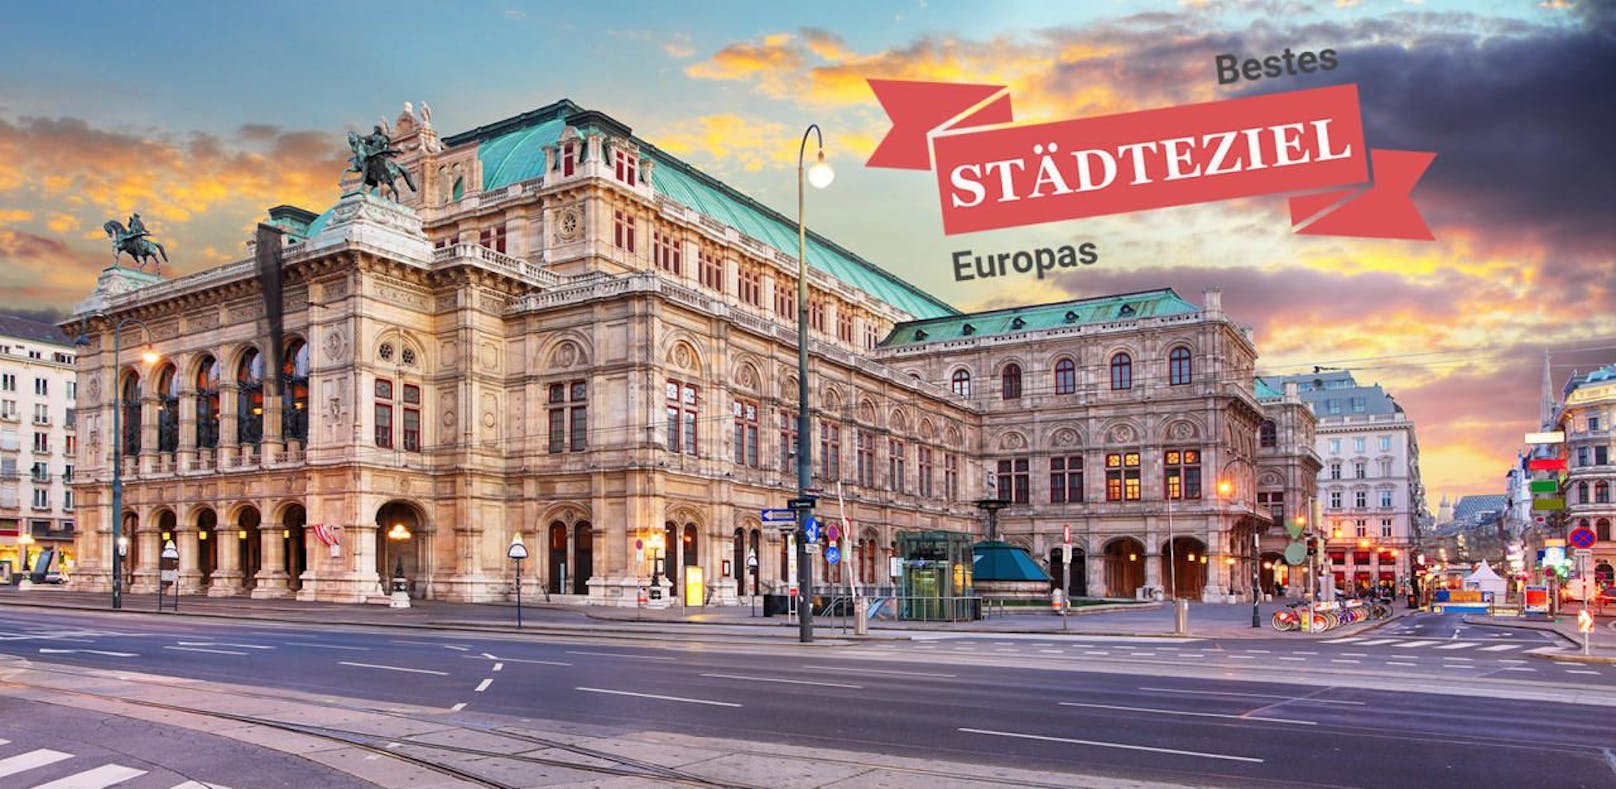 Wien: Platz 1 der Top-Städteziele in Europa